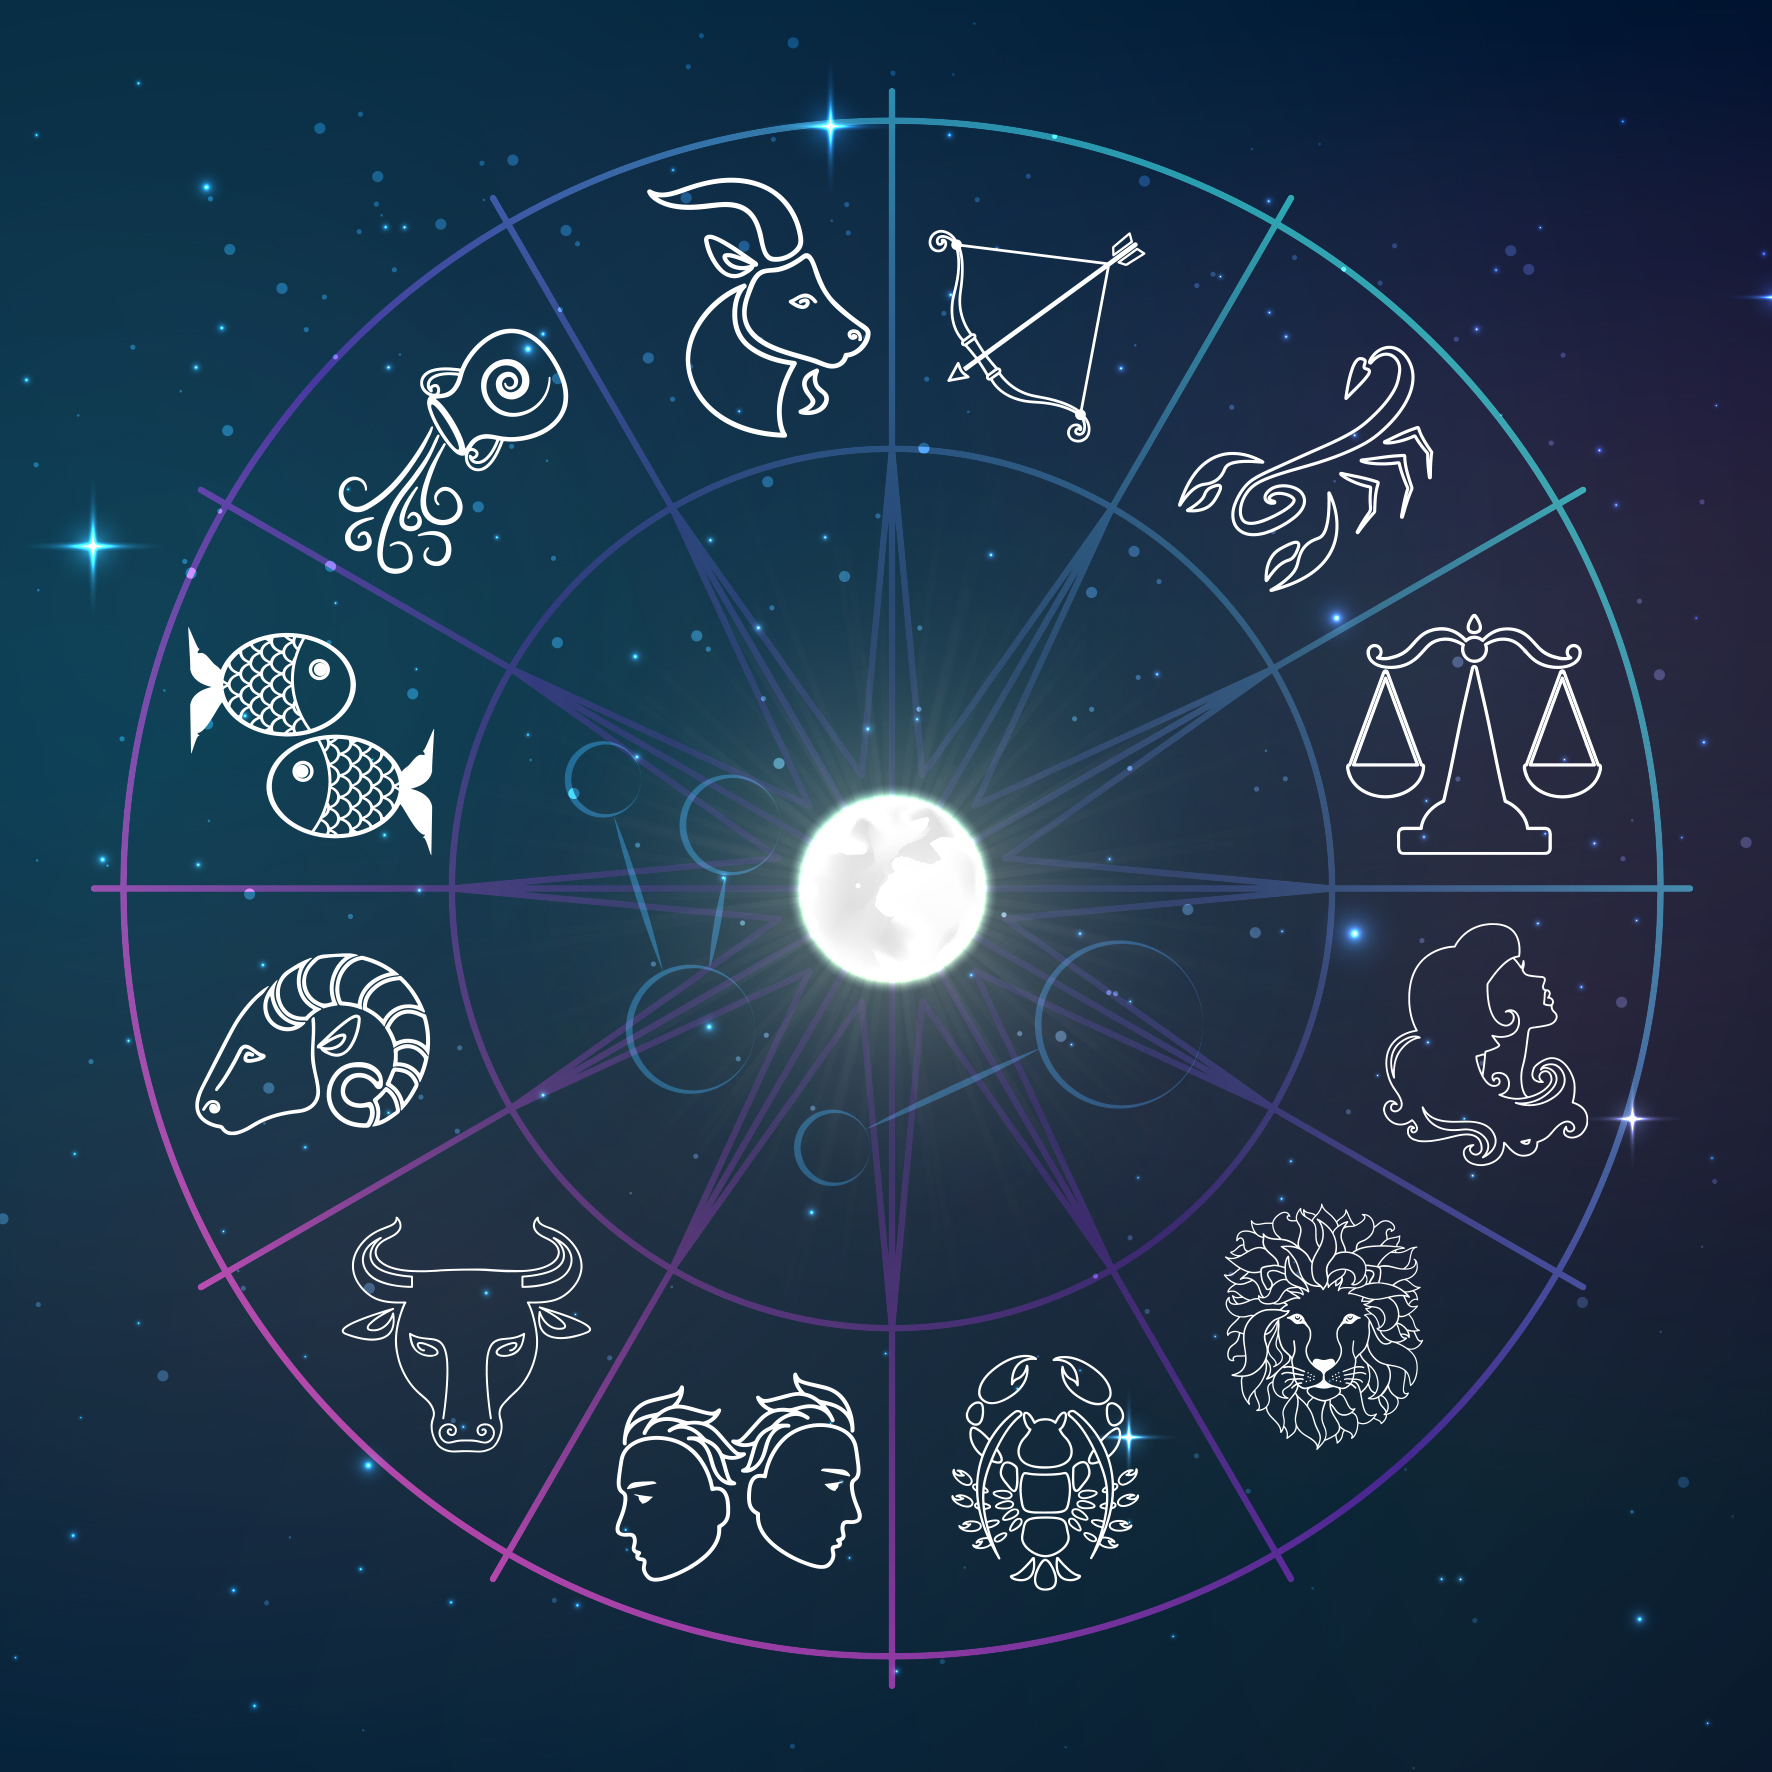 Οι Ετήσιες Αστρολογικές Προβλέψεις από τη Σμάρω Σωτηράκη